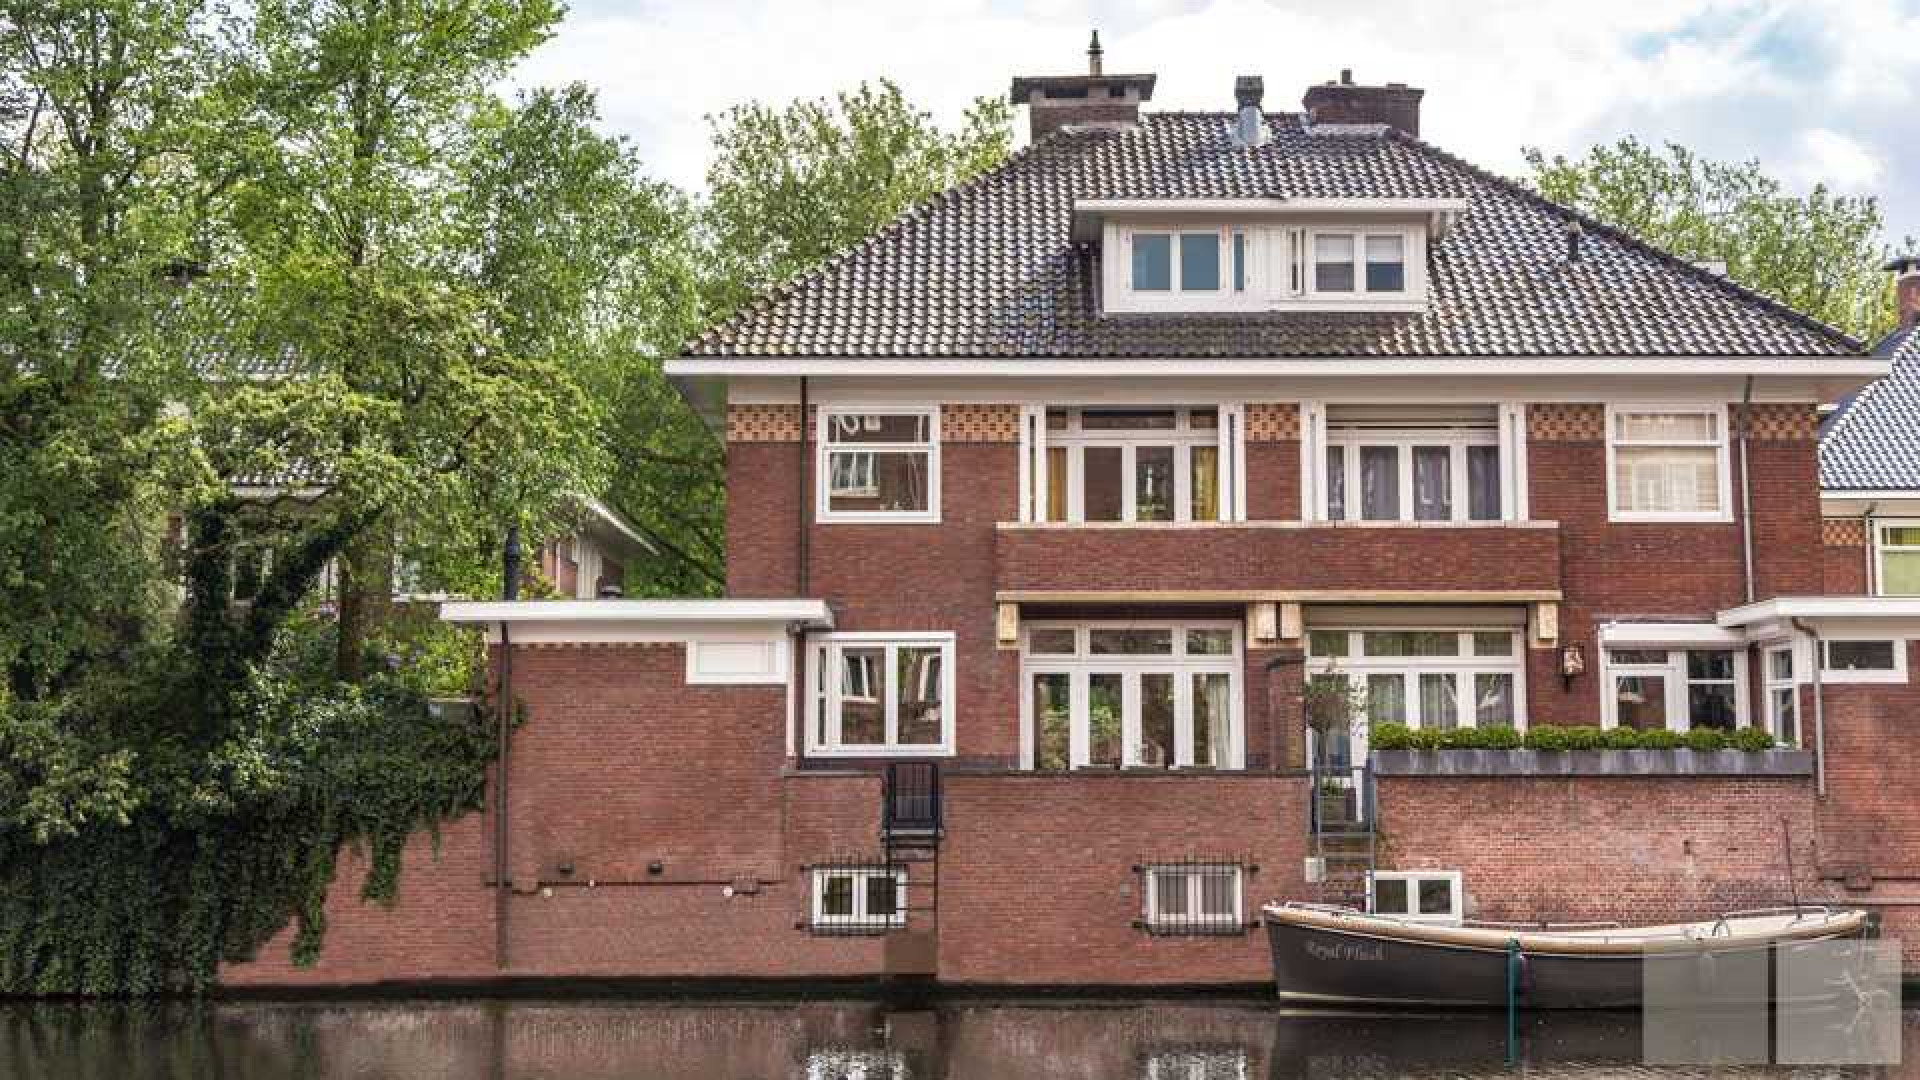 RTL presentatrice Annemarie van Gaal zet haar miljoenen kostende stadsvilla te koop. Zie foto's 1